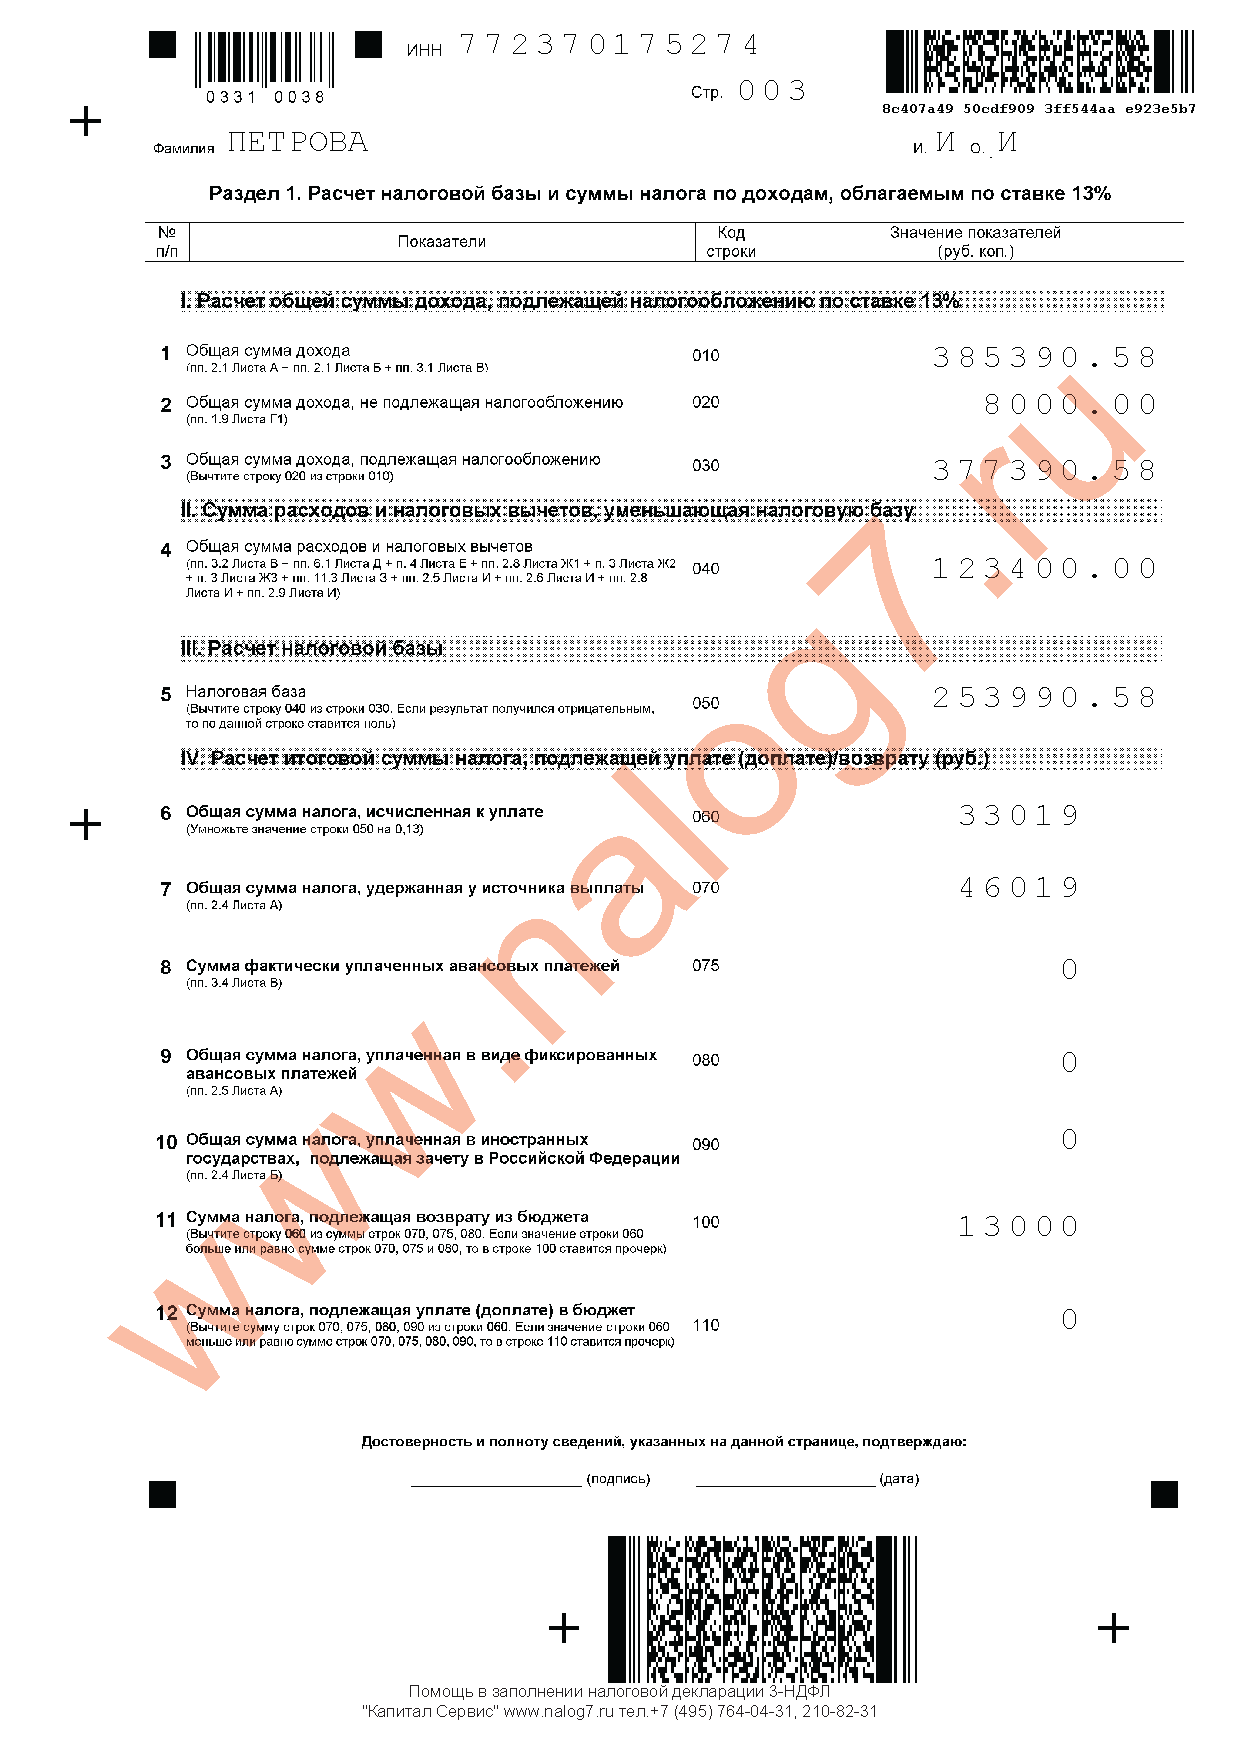 Пример заполнения налоговой декларации 3-НДФЛ за 2013 год при оплате лечения и обучения